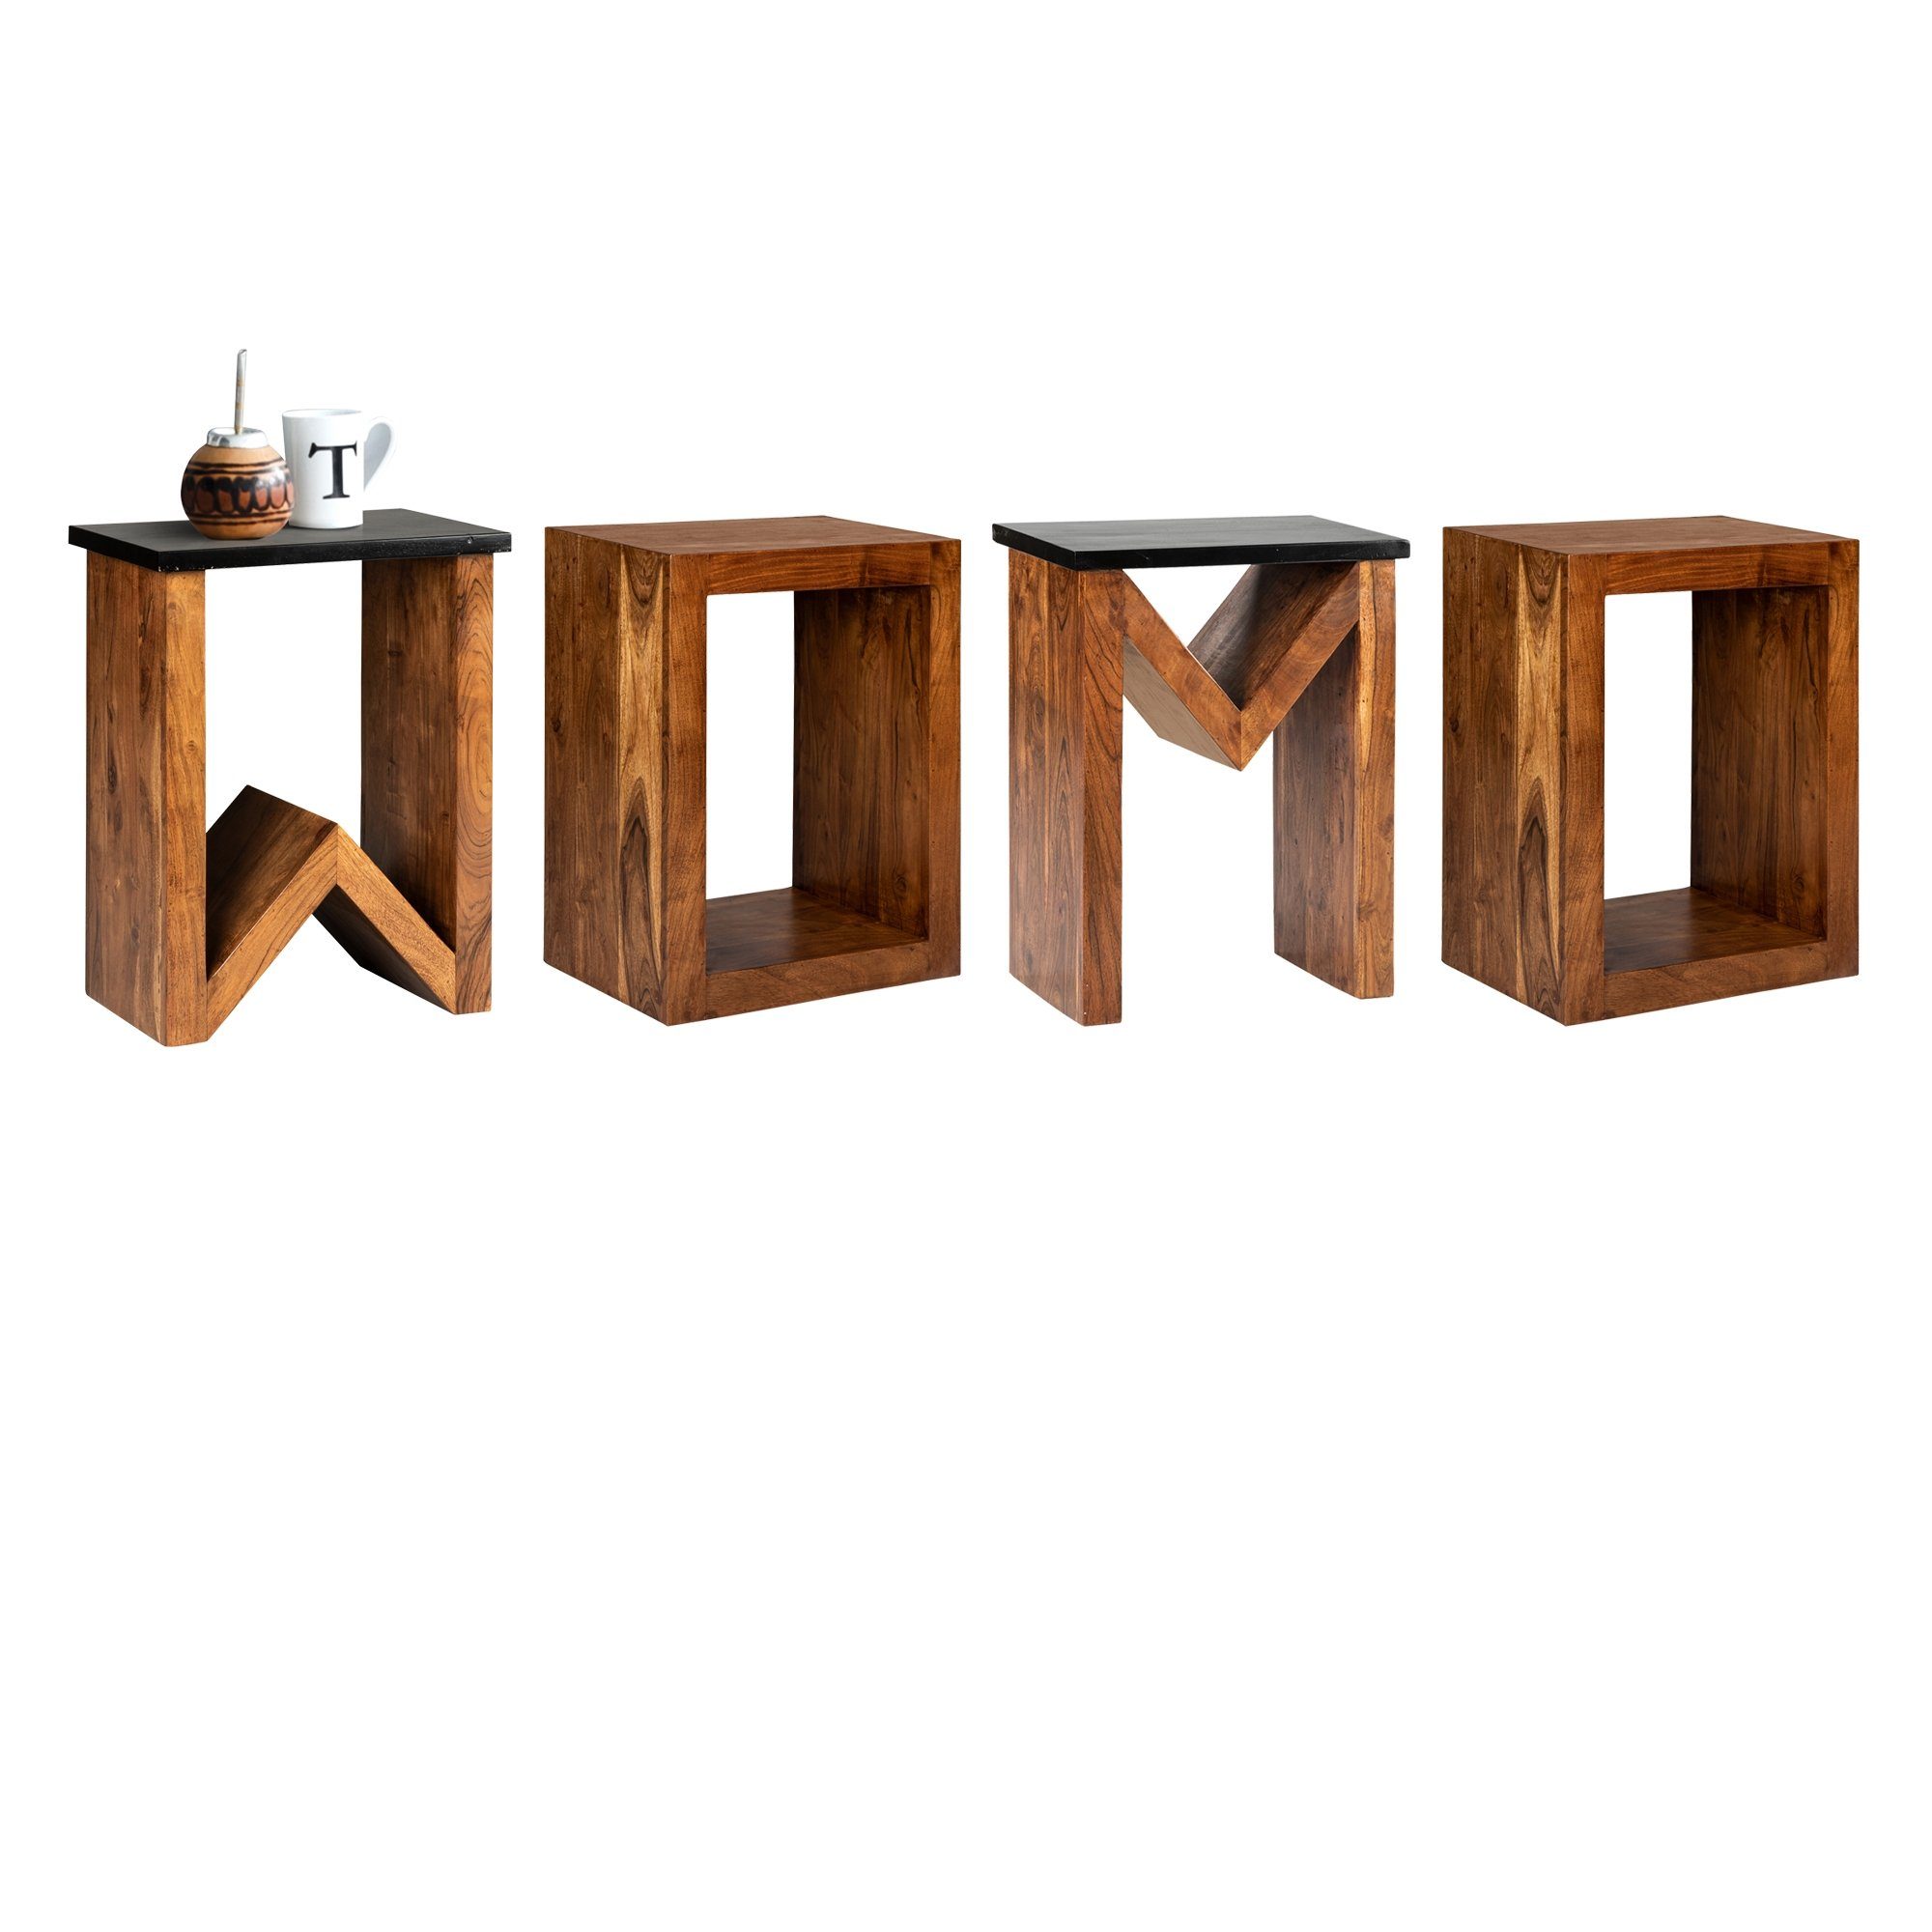 WOMO-DESIGN Beistelltisch 60cm Braun D-Form Massivholz Unikat Wohnzimmertisch Holztisch, Akazienholz Kaffeetisch Loungetisch handgefertigt Sofatisch